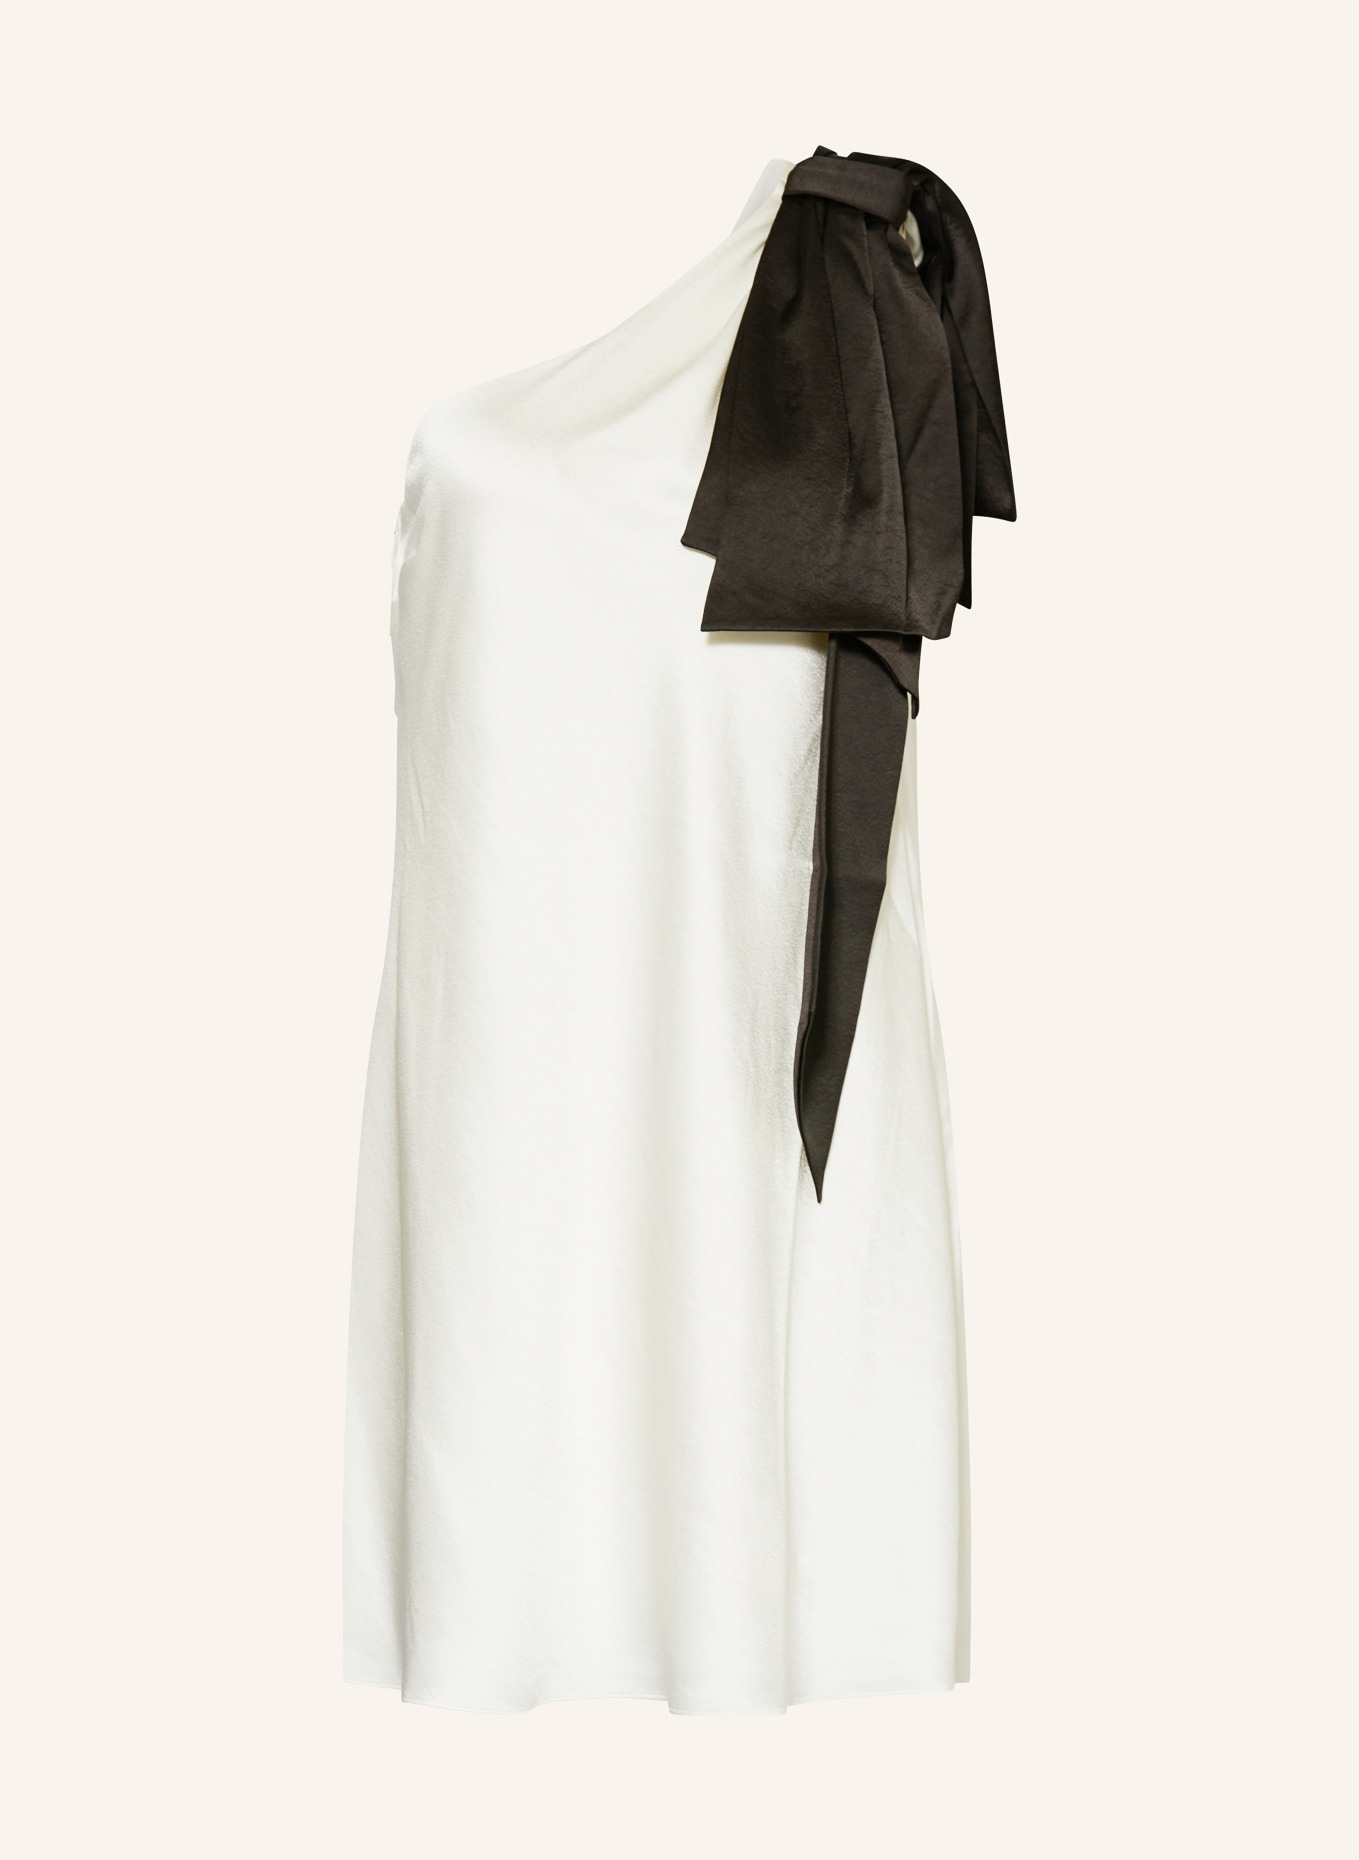 TED BAKER One-Shoulder-Kleid MIDORI aus Satin, Farbe: CREME/ SCHWARZ (Bild 1)